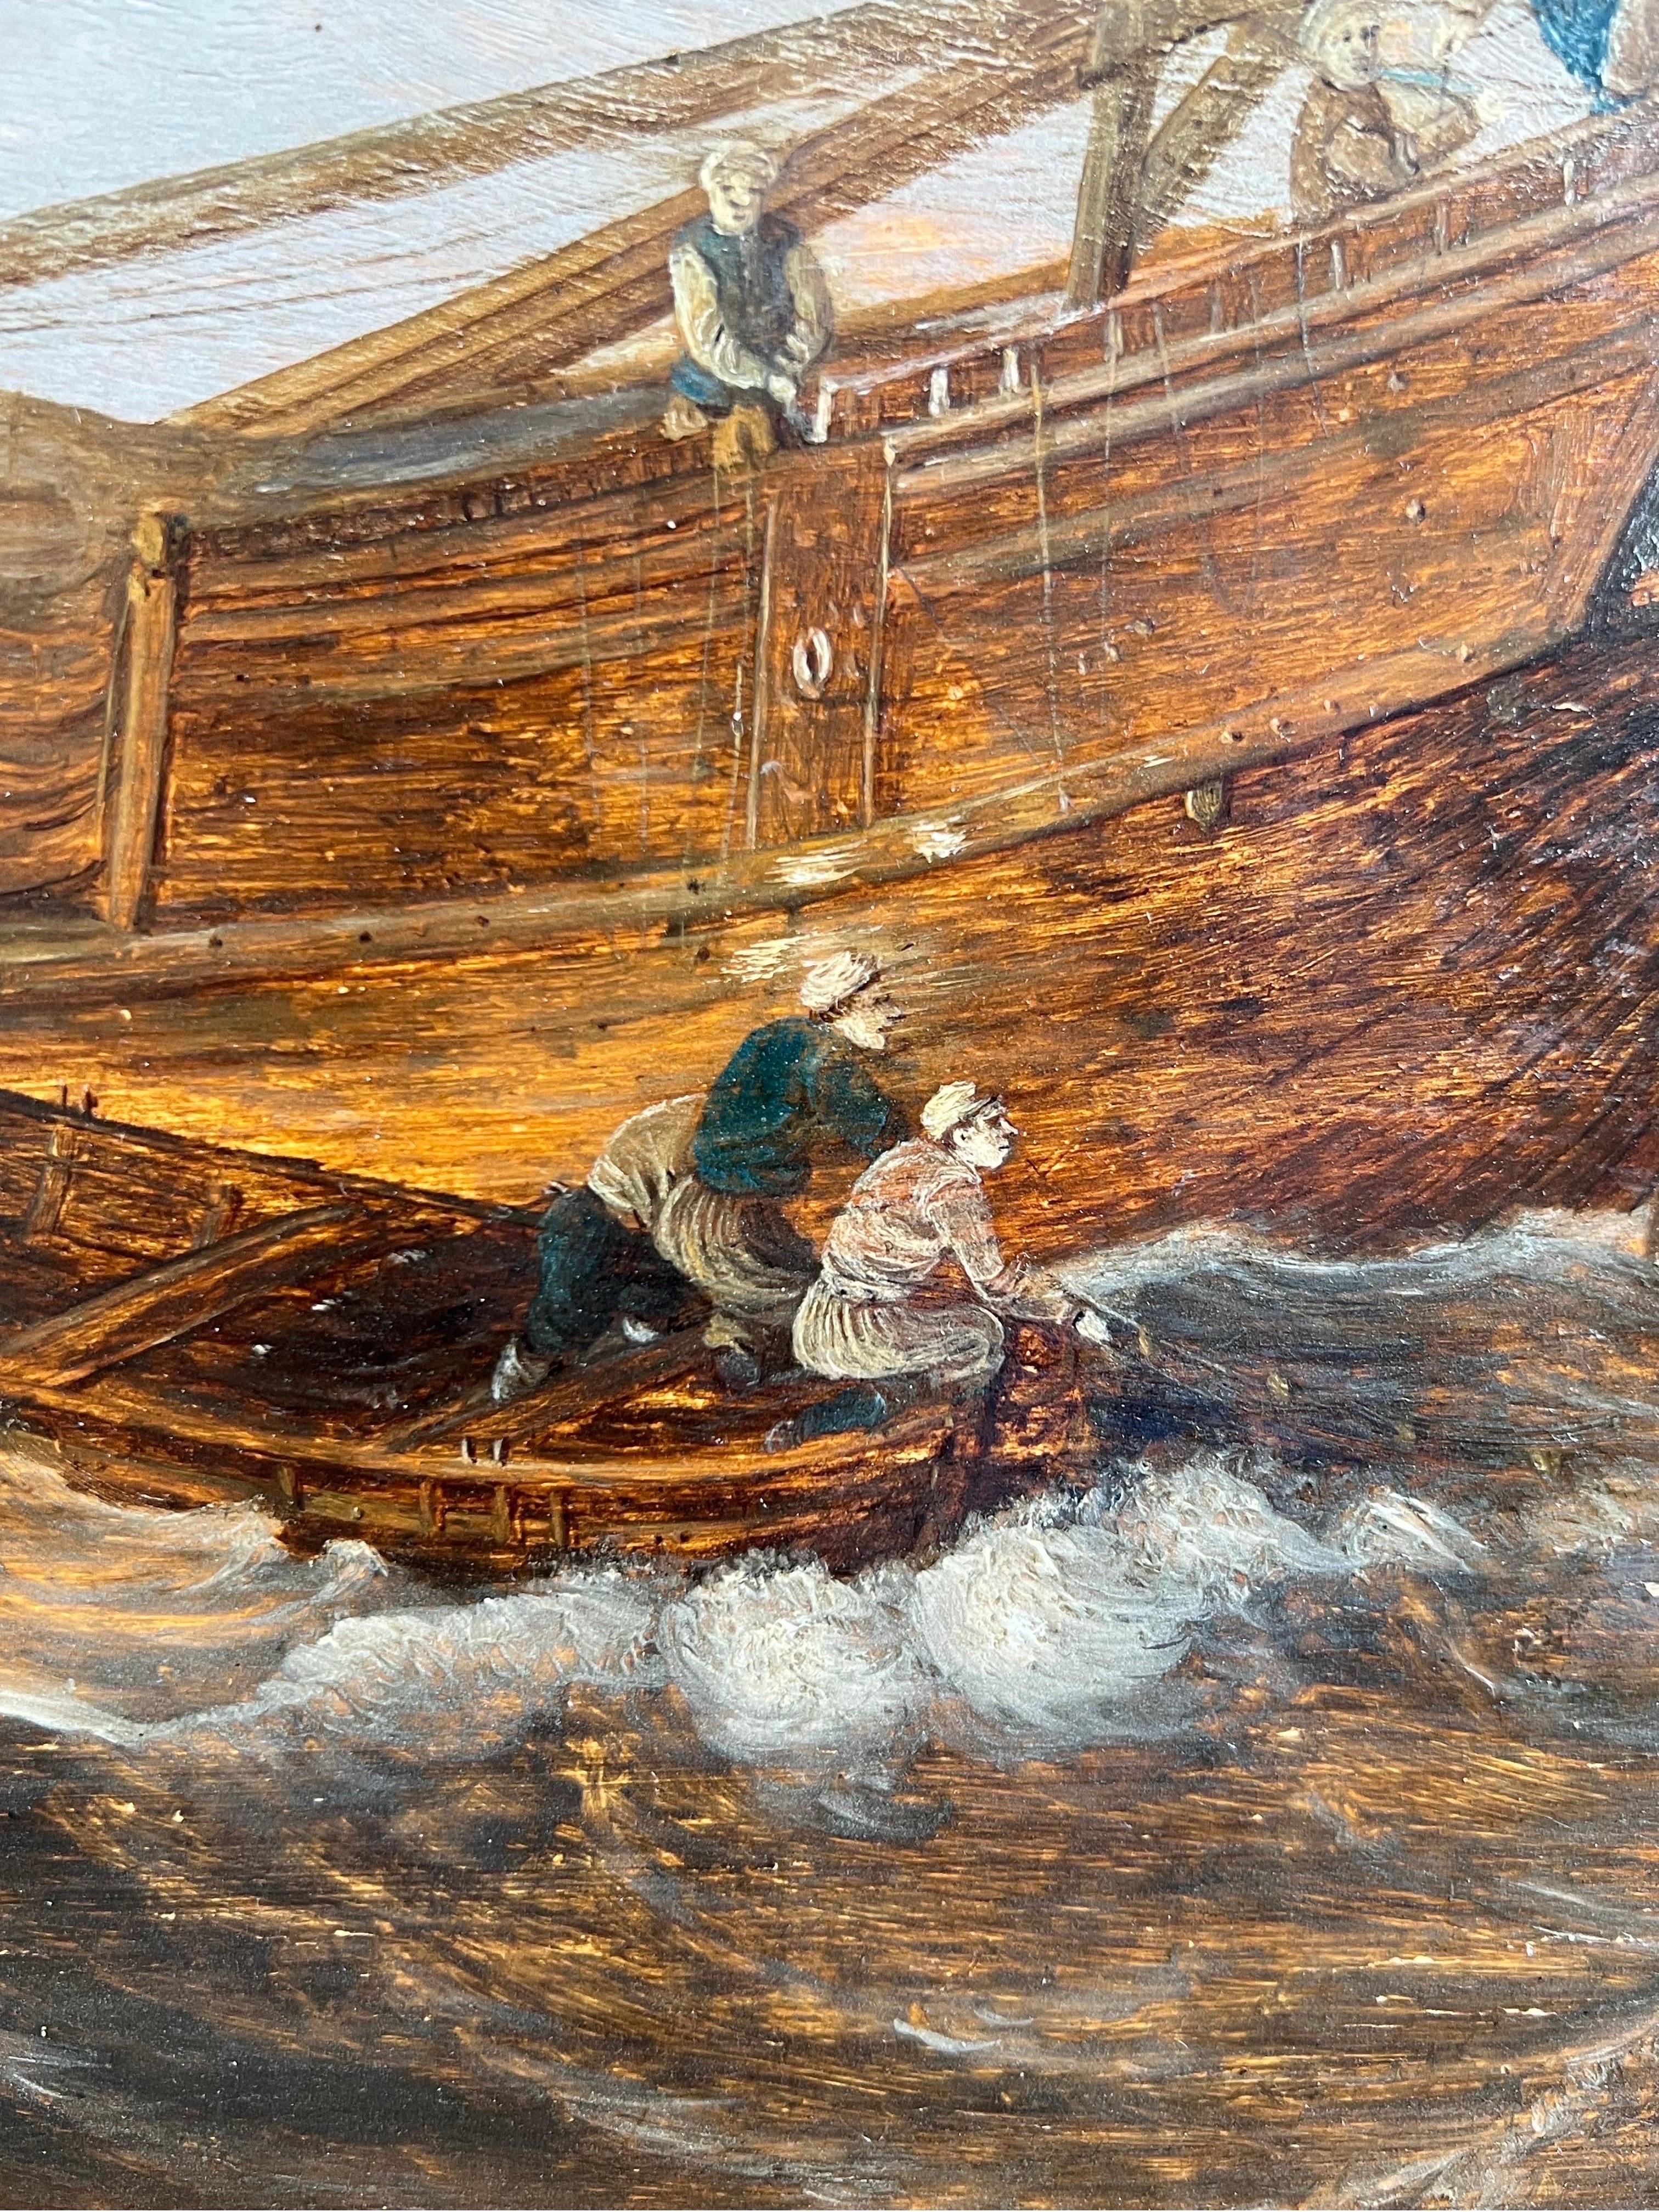 Marine hollandaise du 17e siècle, mer agitée avec des bateaux, dont une goélette hollandaise et un bateau à paquets.

Le présent tableau est un paysage marin paisible, mais très vivant, et un bel exemple des paysages marins de l'âge d'or hollandais.